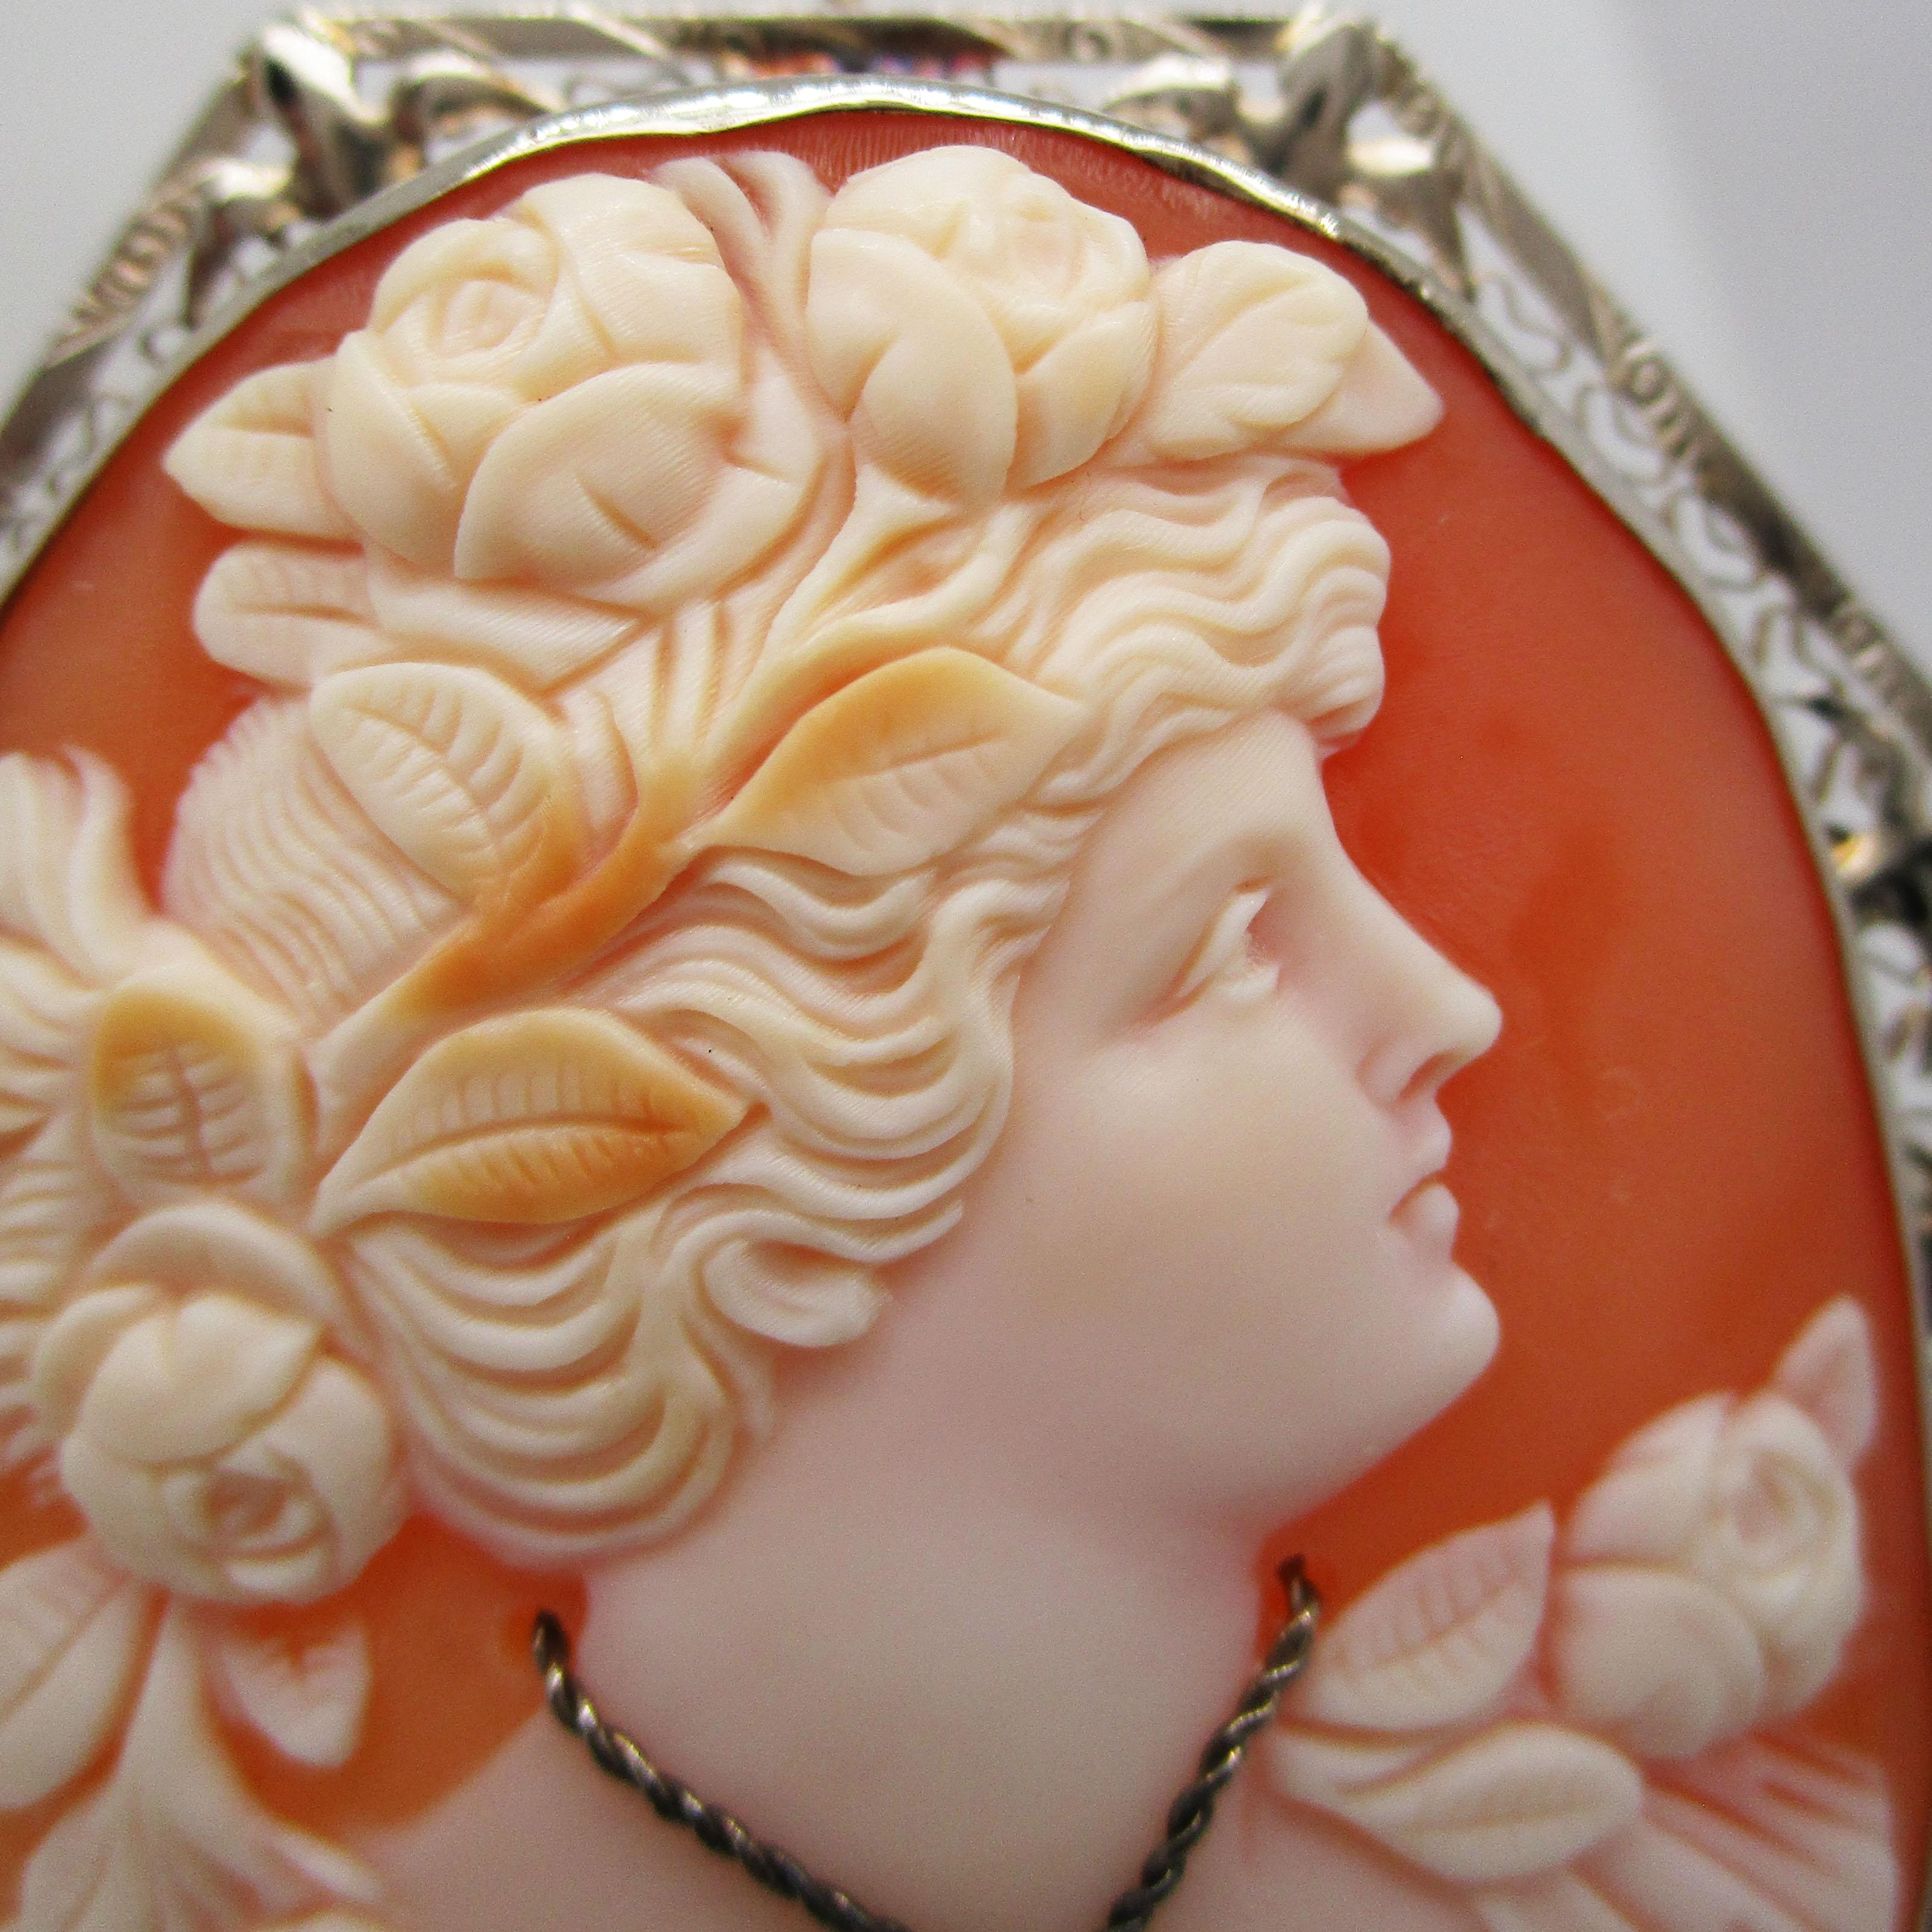 Il s'agit d'un stupéfiant camée en coquillage tricolore des années 1920, sculpté dans un pendentif en or blanc 14k. Le camée représente une superbe femme tournée vers la gauche, avec des cheveux flottants et de magnifiques accessoires floraux. La